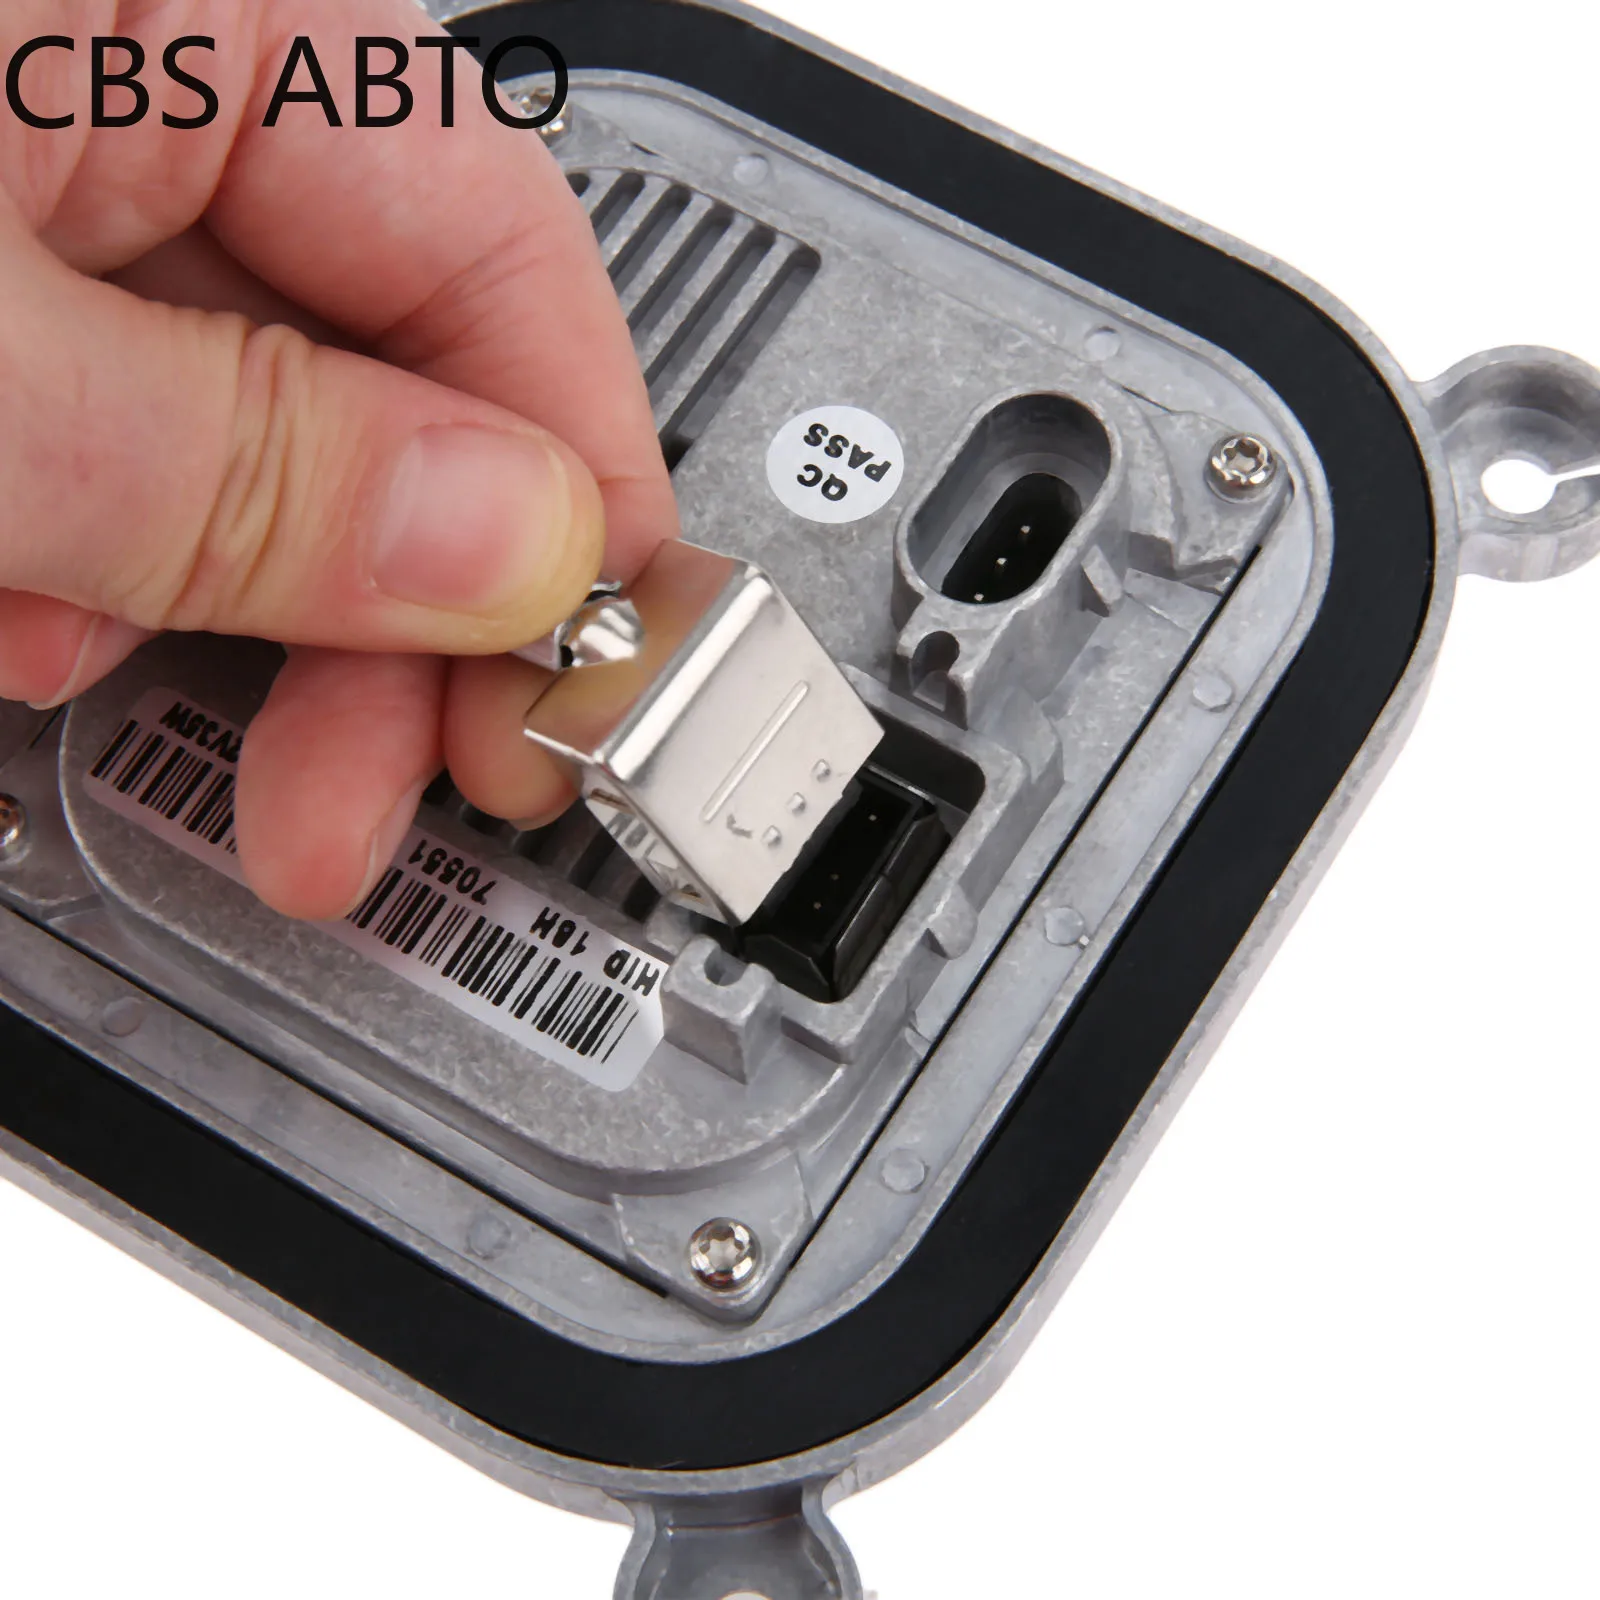 CBS ABTO D1S D3S ксенон HID фар балласт воспламенитель управление высокая мощность выходной кабель для Ford Lincoln 10R034663 8A5Z13C170A